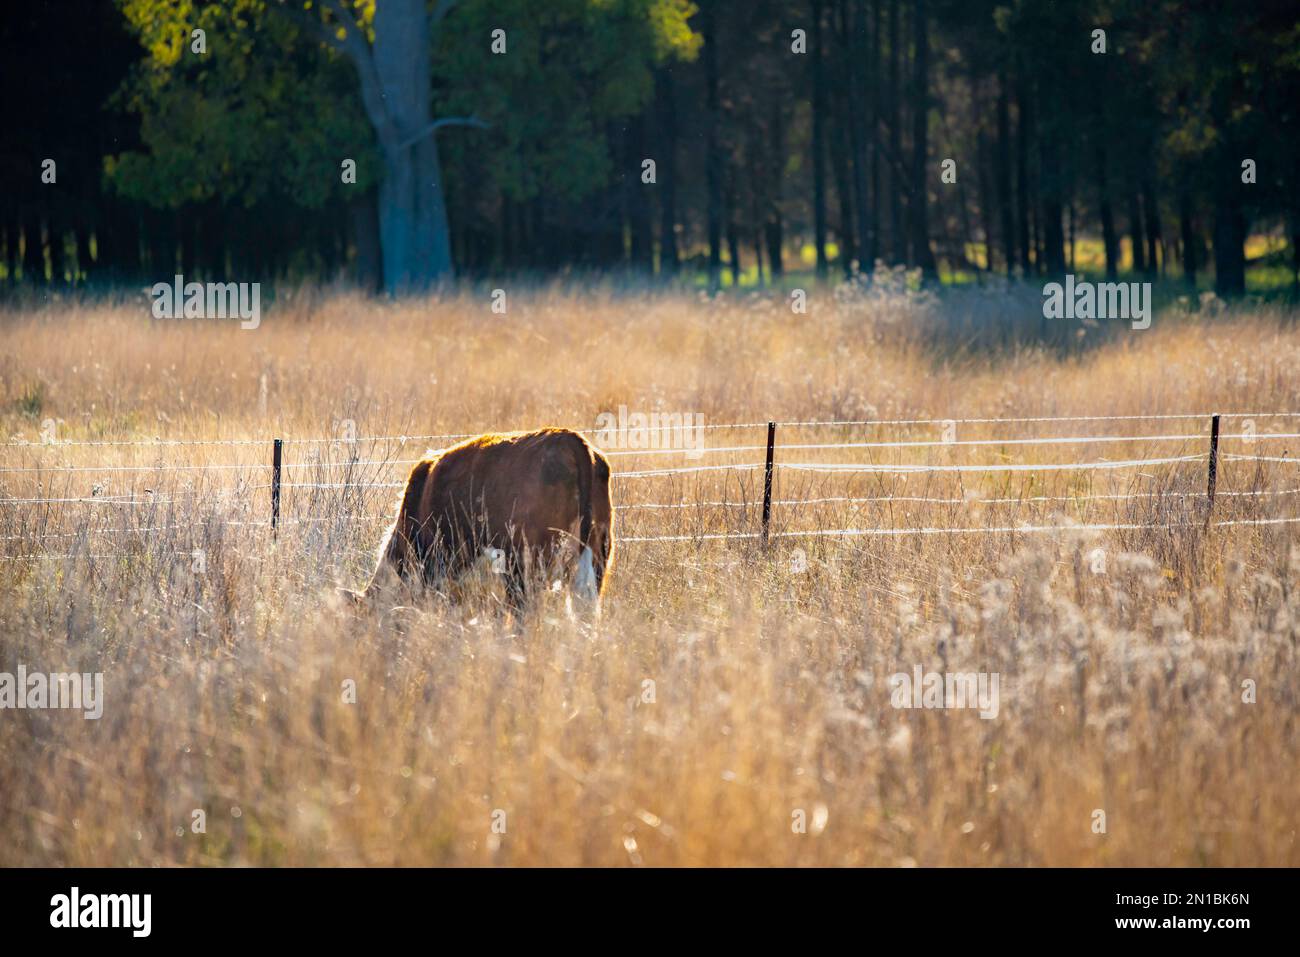 Une vache (bovins de boucherie) presque cachée dans une longue herbe dans un enclos d'une ferme australienne Banque D'Images